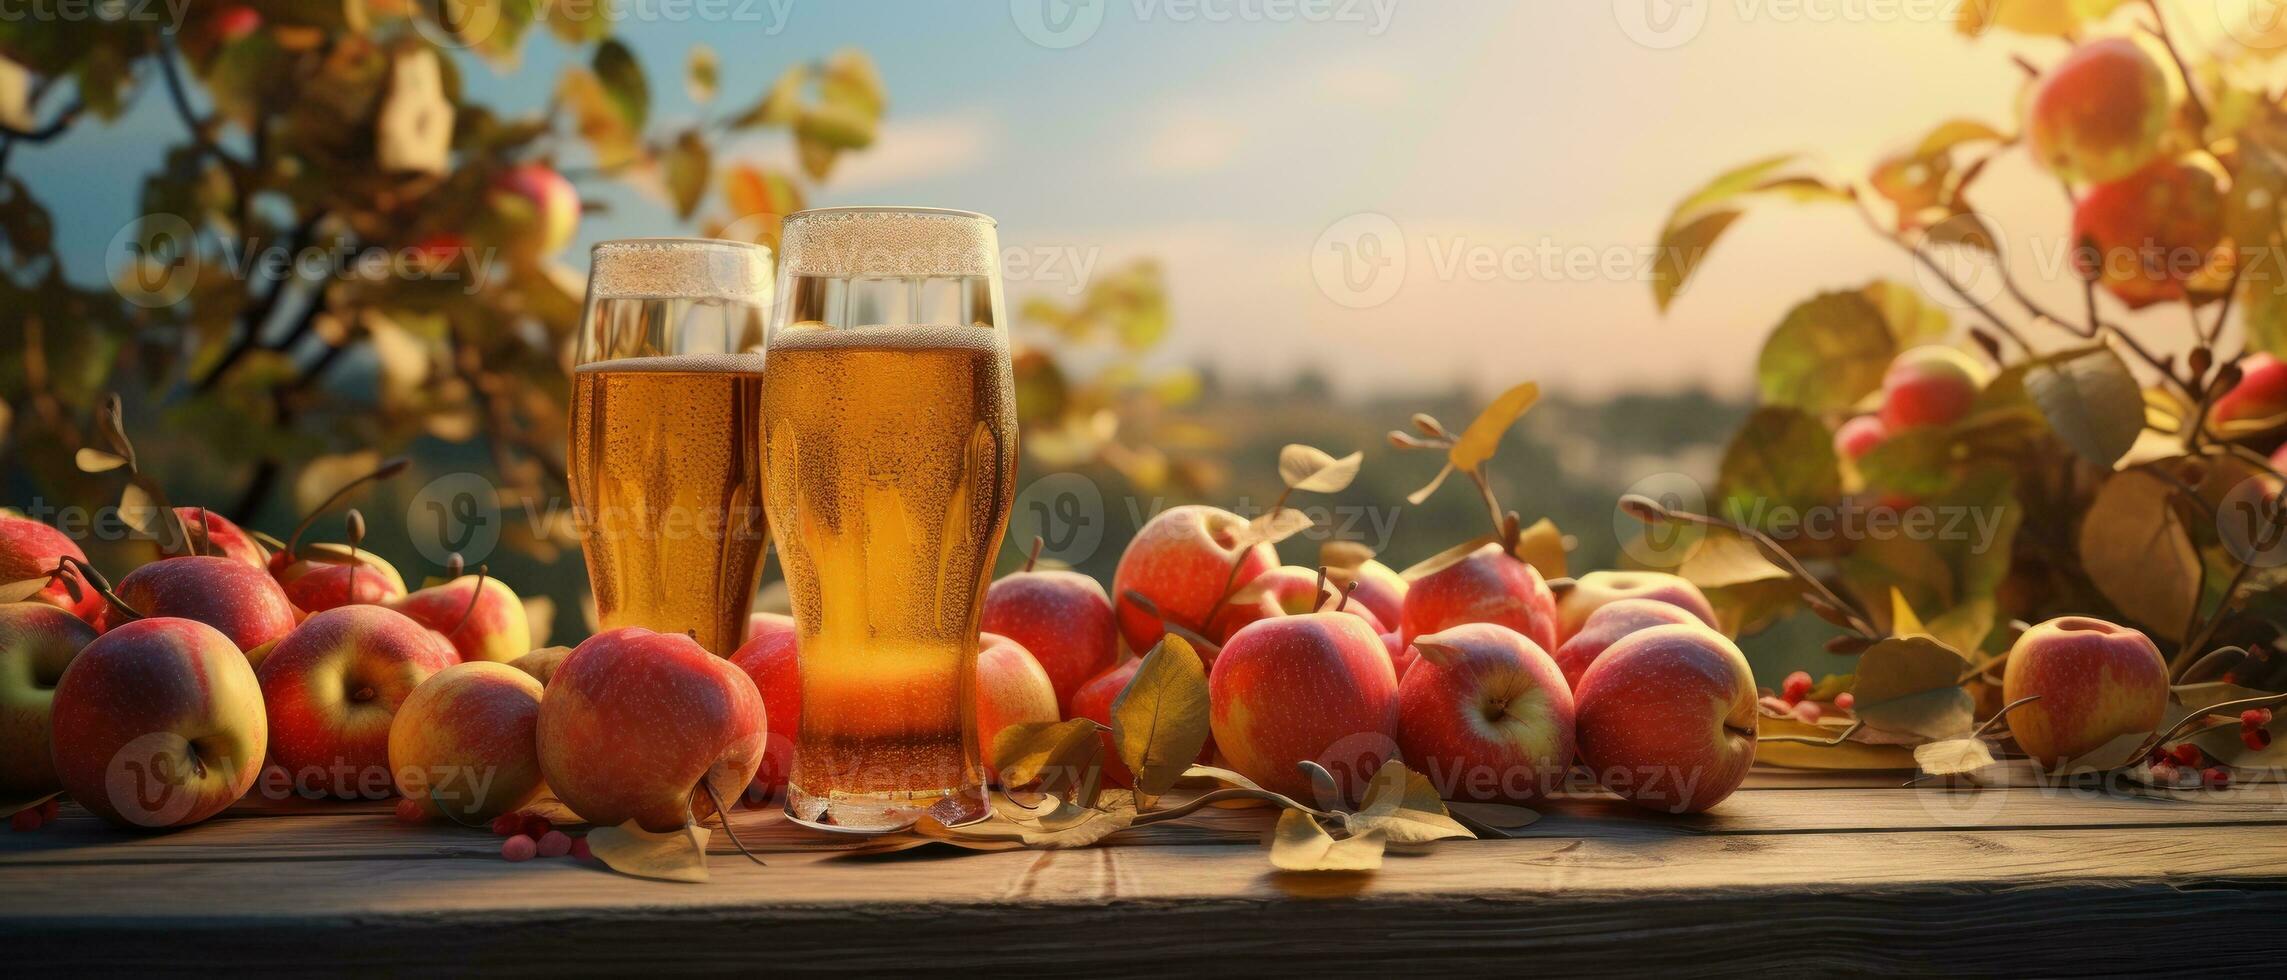 äpple cider på tabell med äpplen foto